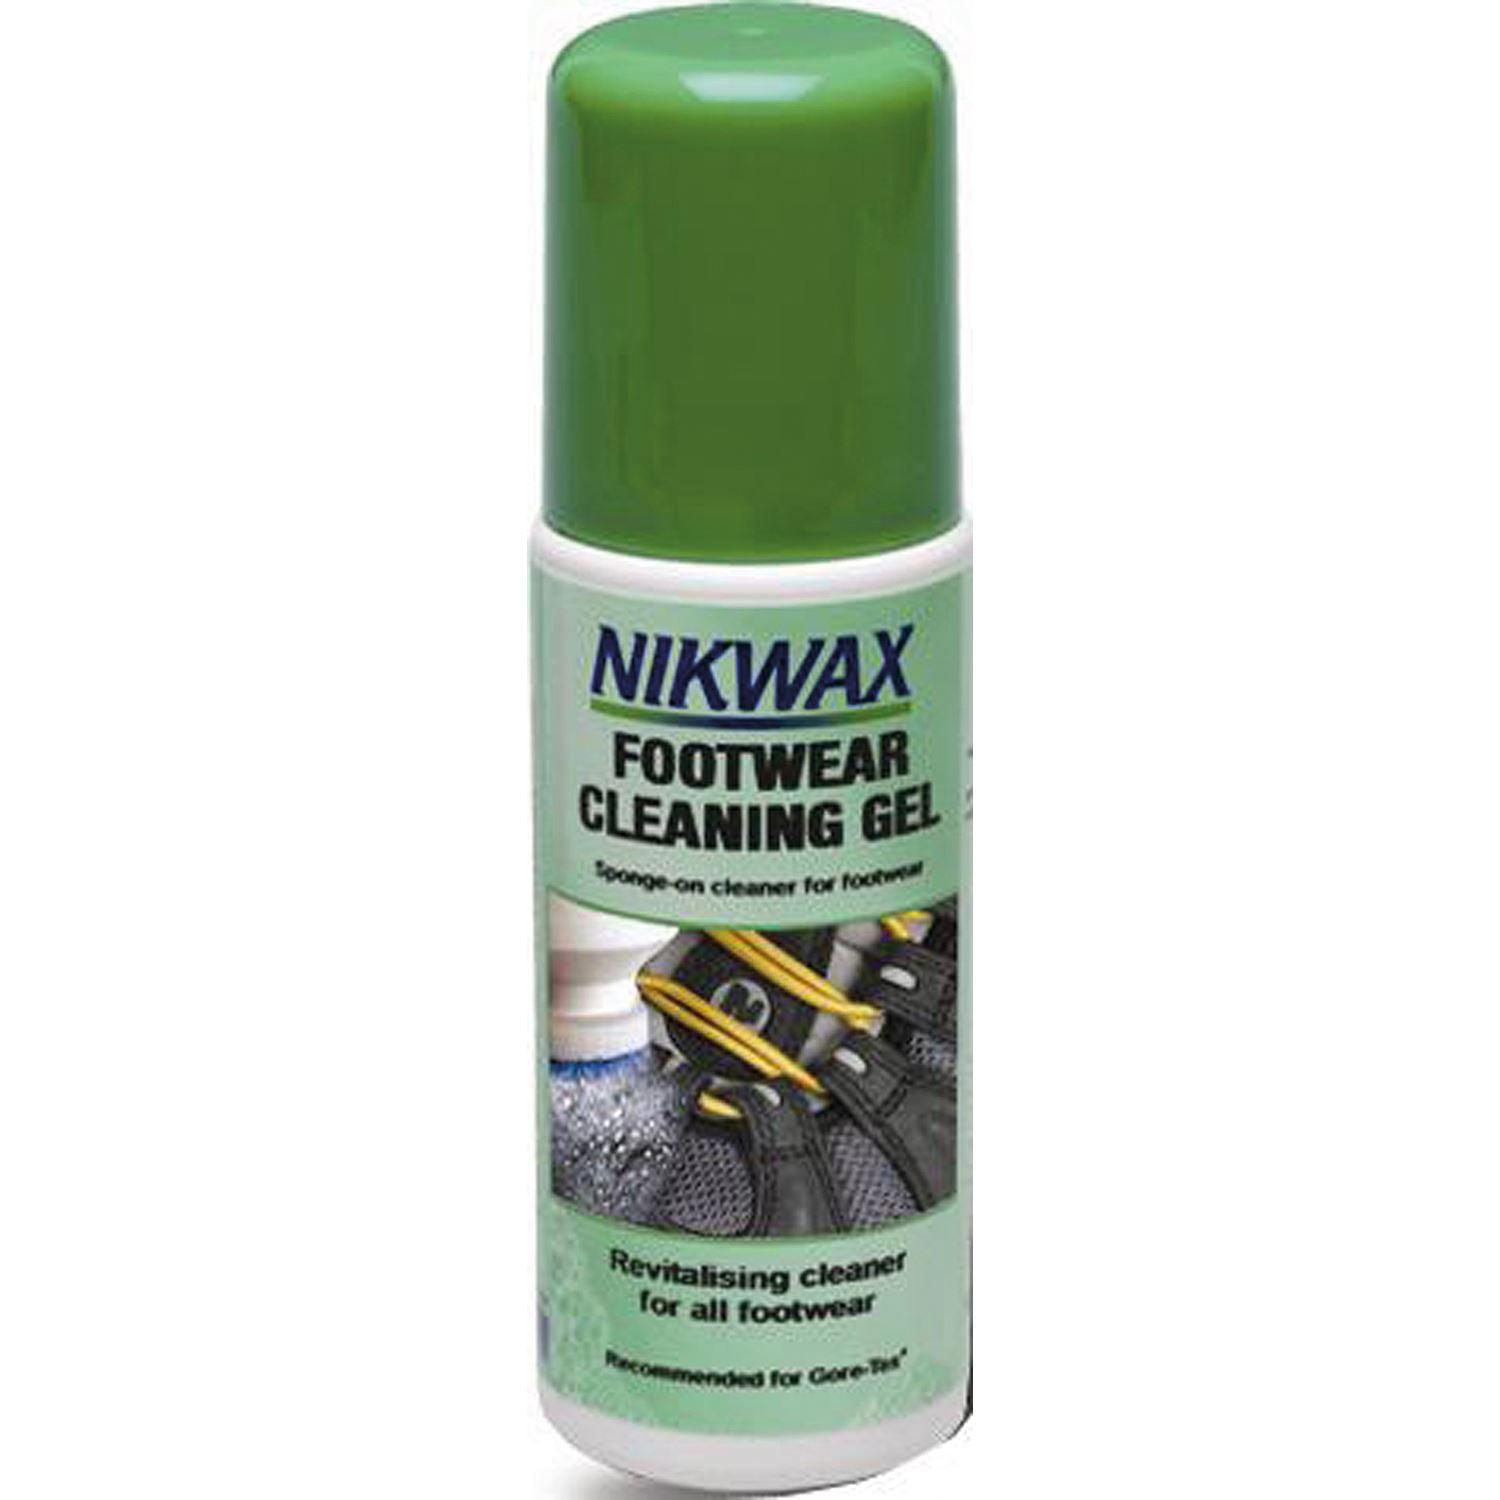 Nikwax Footwear Cleaning Gel - Just Horse Riders